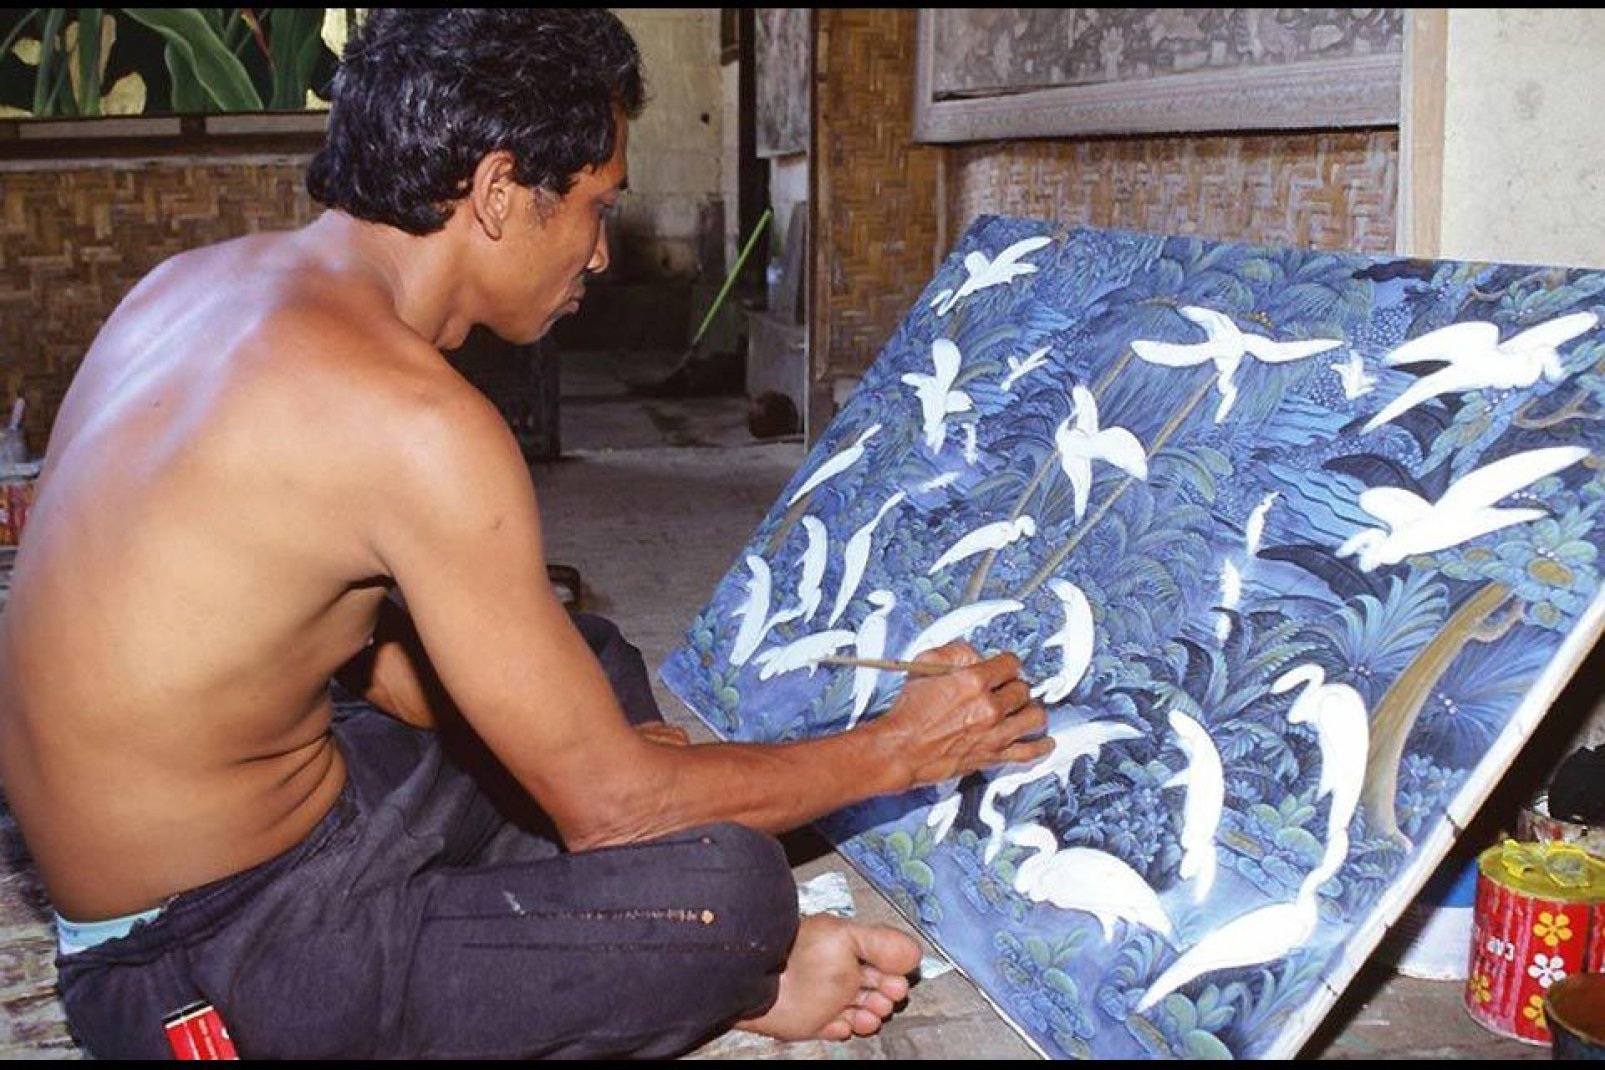 L'arte scorre nelle vene di Ubud, dove numerose gallerie espongono le opere dei talenti locali.